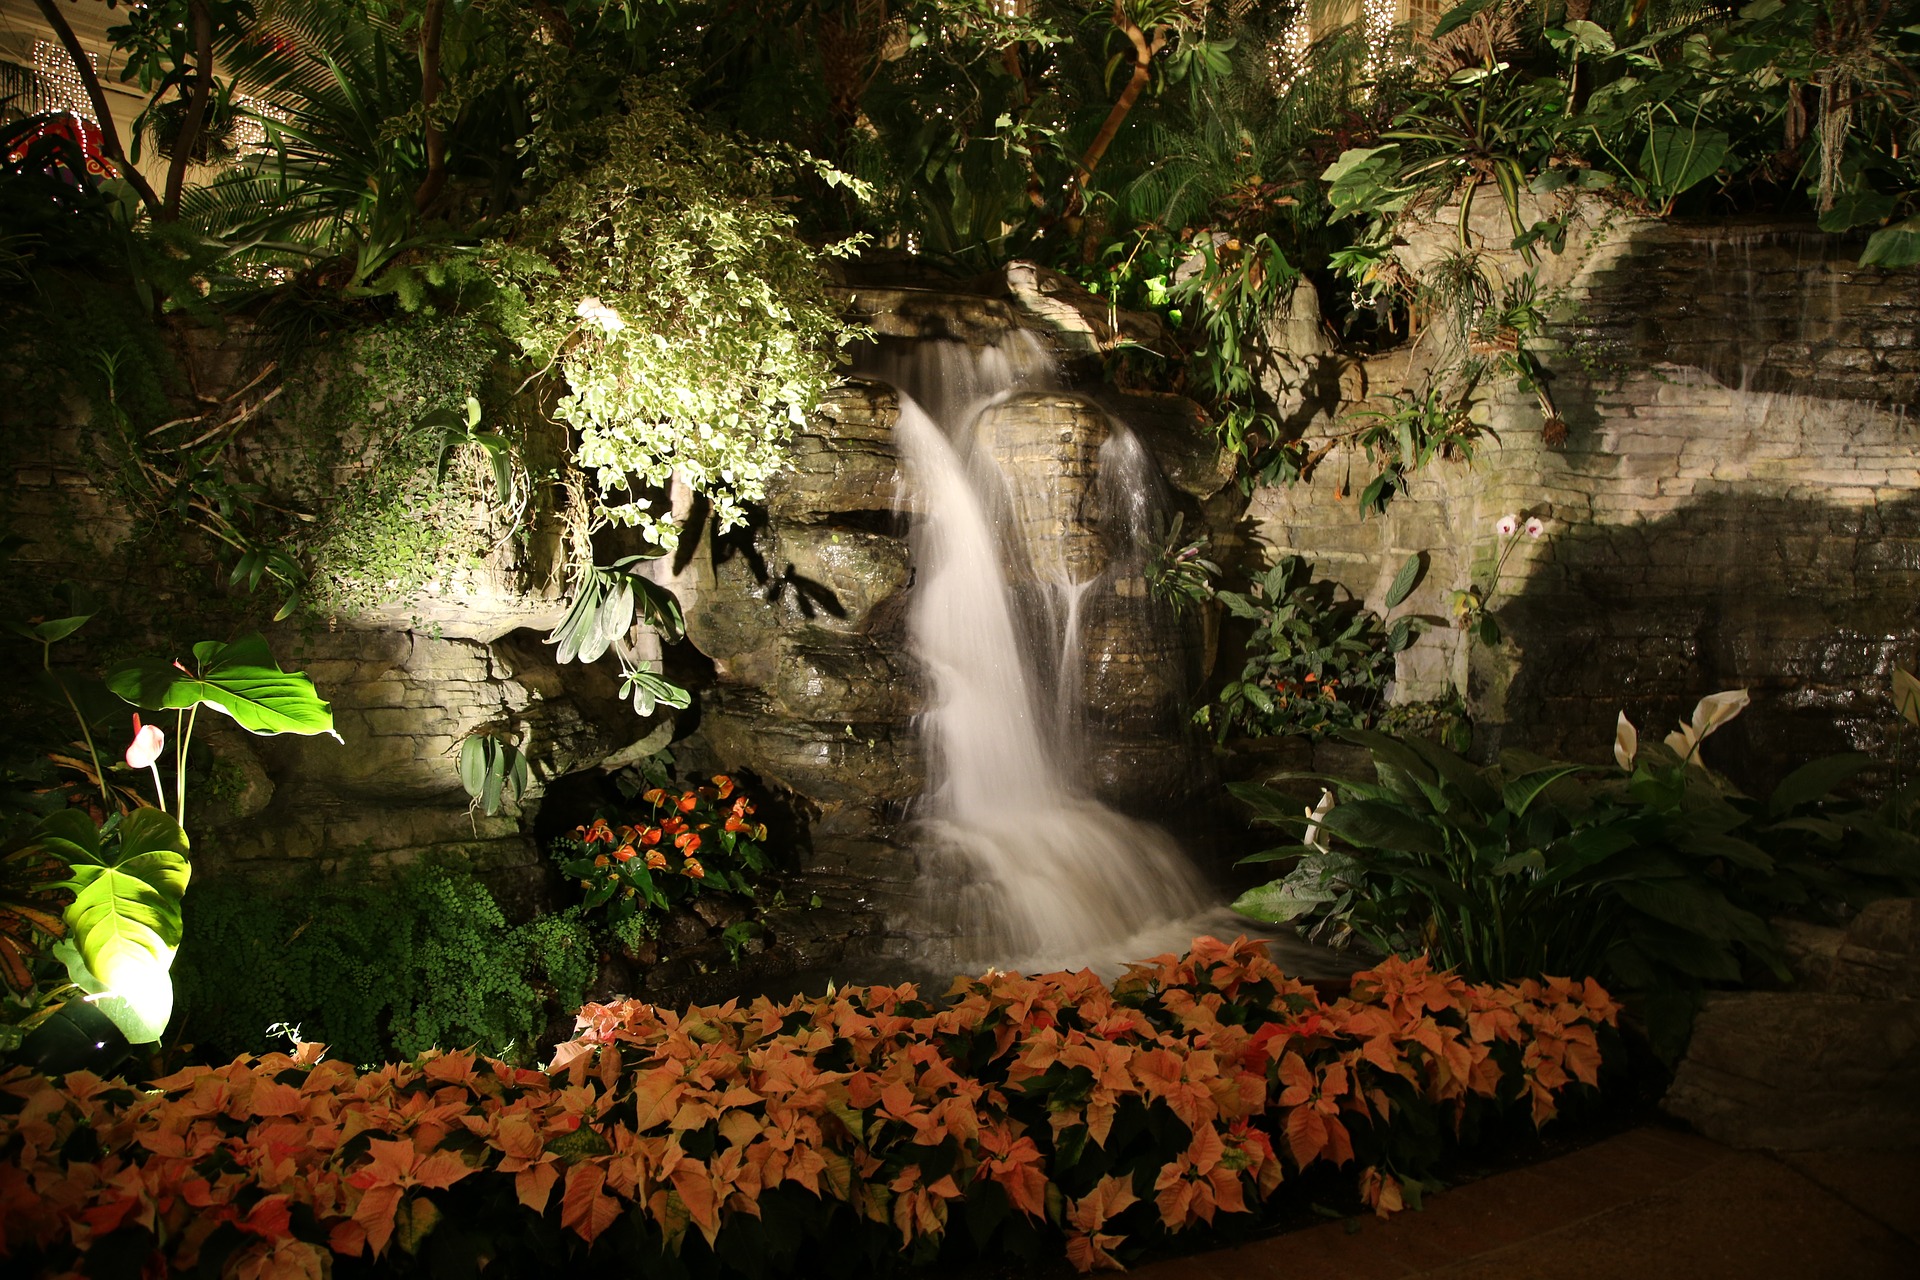 man made, garden, flower, plant, poinsettia, waterfall